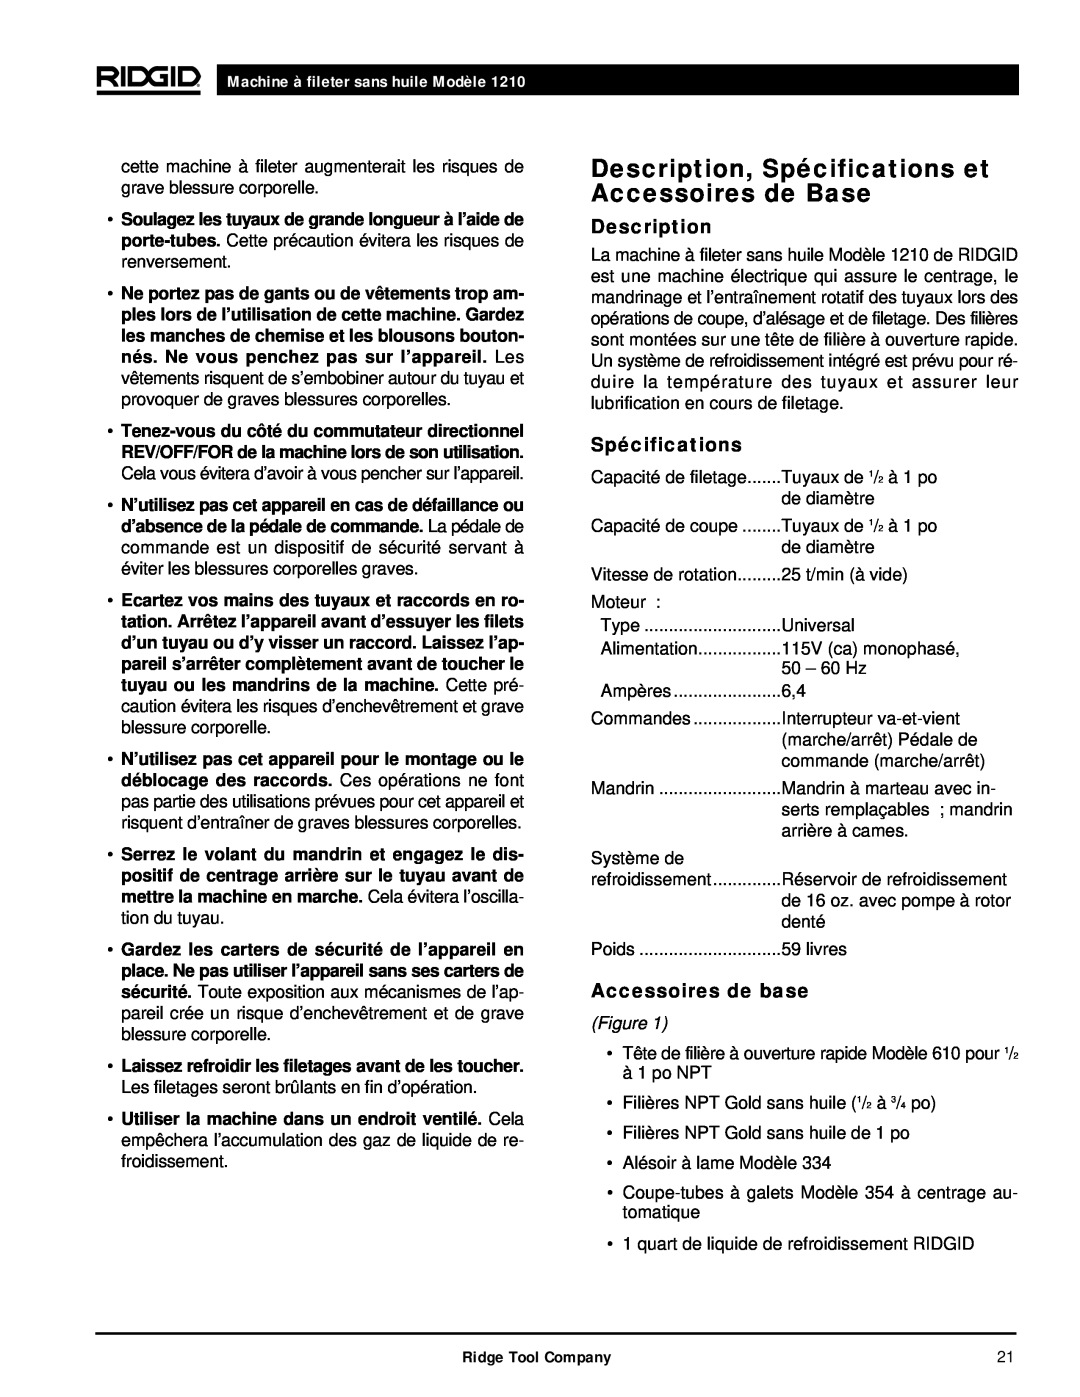 RIDGID 1210 Description, Spécifications et Accessoires de Base, Accessoires de base, Machine à fileter sans huile Modèle 